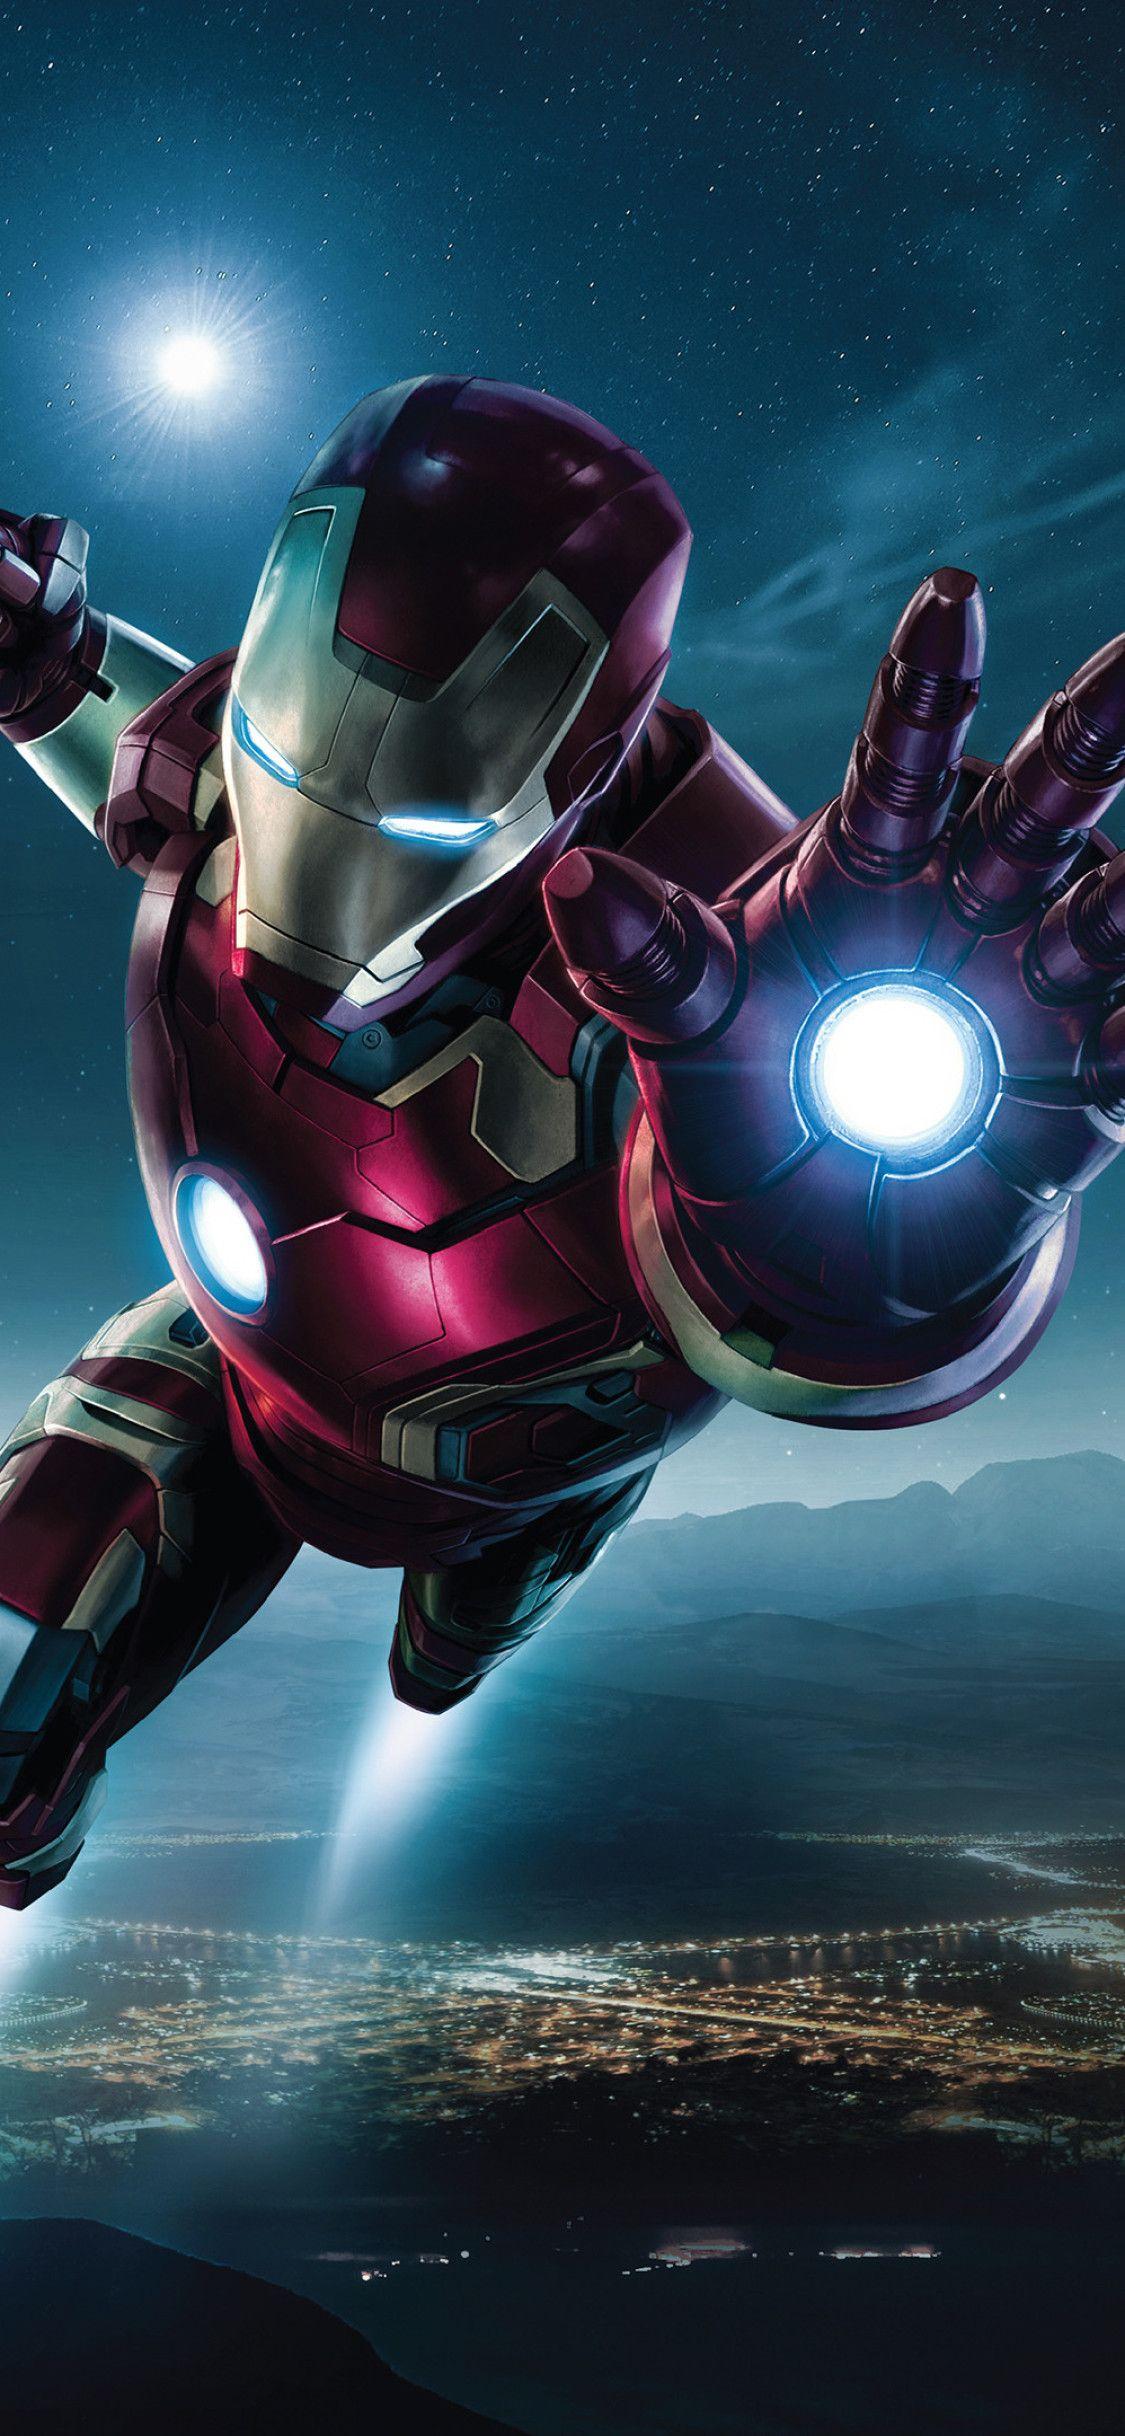 Iron Man 4K sẽ đưa bạn đến thế giới của siêu anh hùng Iron Man một cách chân thật nhất. Với độ phân giải 4K cực kì sắc nét, bạn sẽ được trải nghiệm những chi tiết tuyệt vời nhất của Iron Man. Những hình ảnh đẹp lung linh về siêu anh hùng này sẽ khiến bạn không thể bỏ lỡ. Đến ngay để xem nhé!